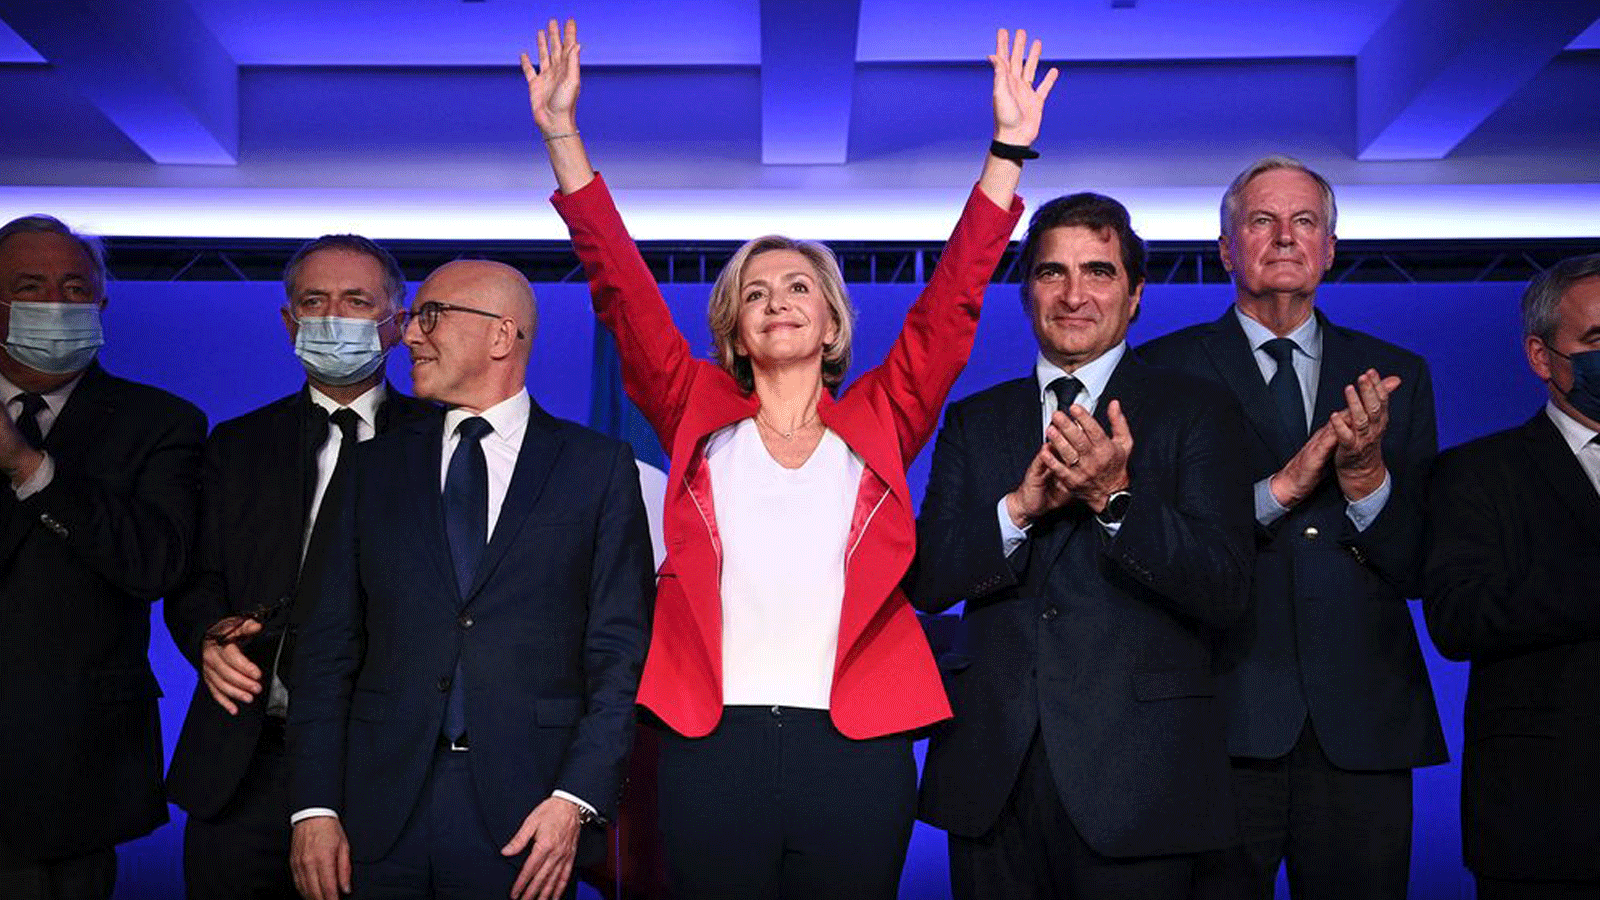 تم اختيار فاليري بيكريس(في الوسط) كمرشحة رئاسية للجمهوريين بعد الانتخابات التمهيدية في باريس. في 4 كانون الأول/ديسمبر 2021